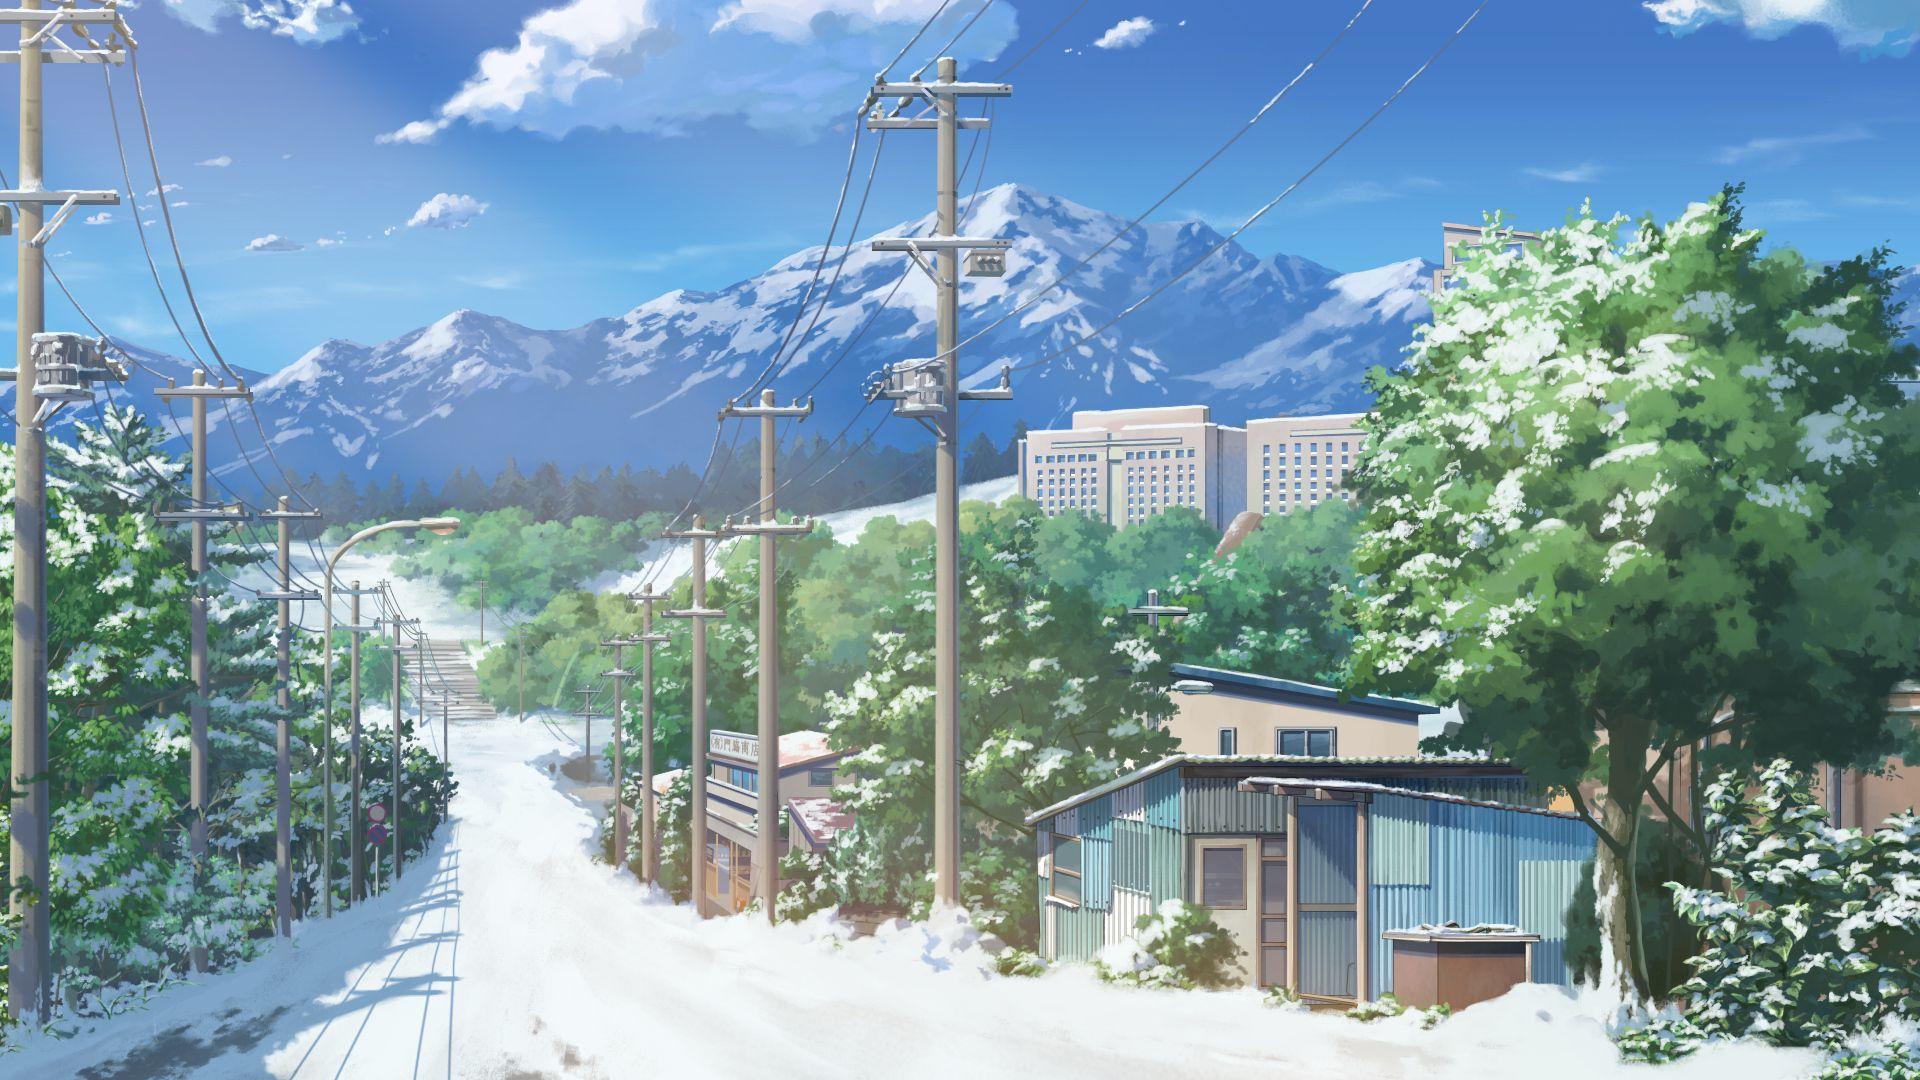 Anime Background Scenes